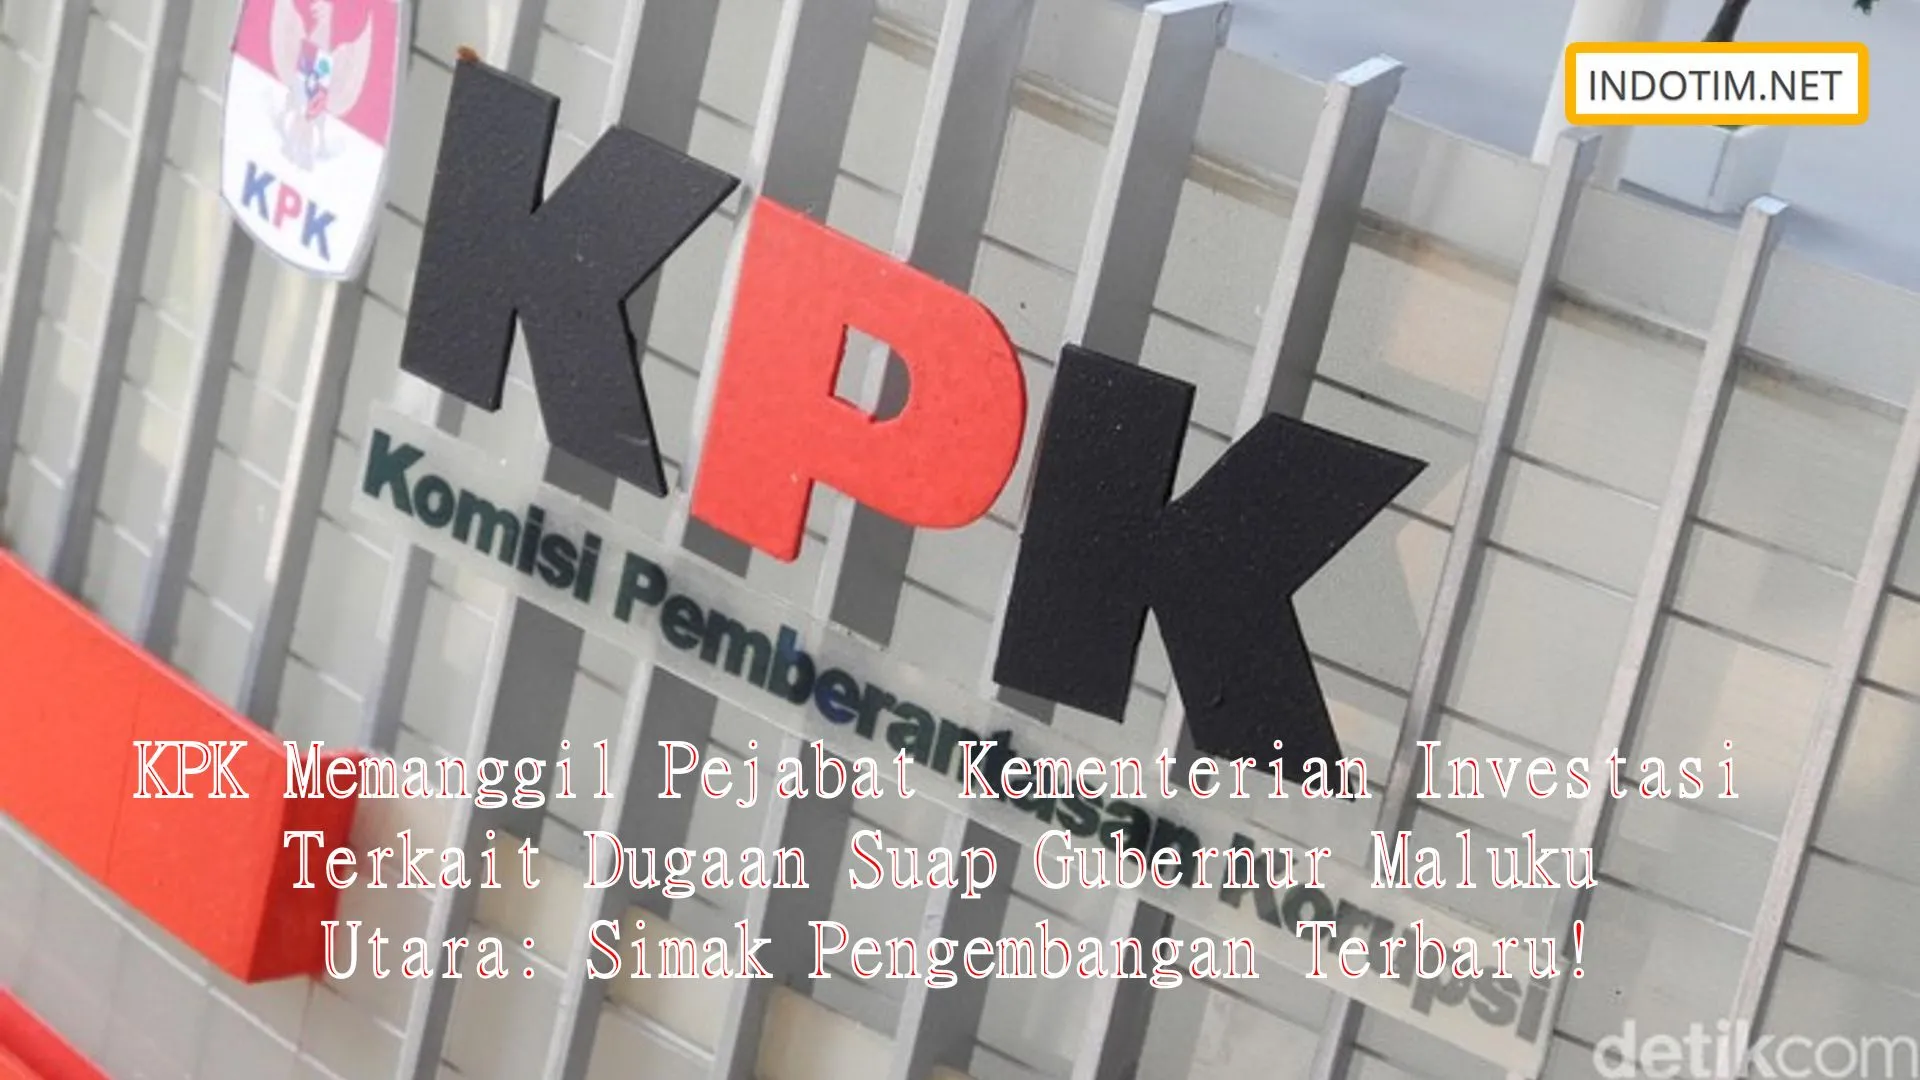 KPK Memanggil Pejabat Kementerian Investasi Terkait Dugaan Suap Gubernur Maluku Utara: Simak Pengembangan Terbaru!